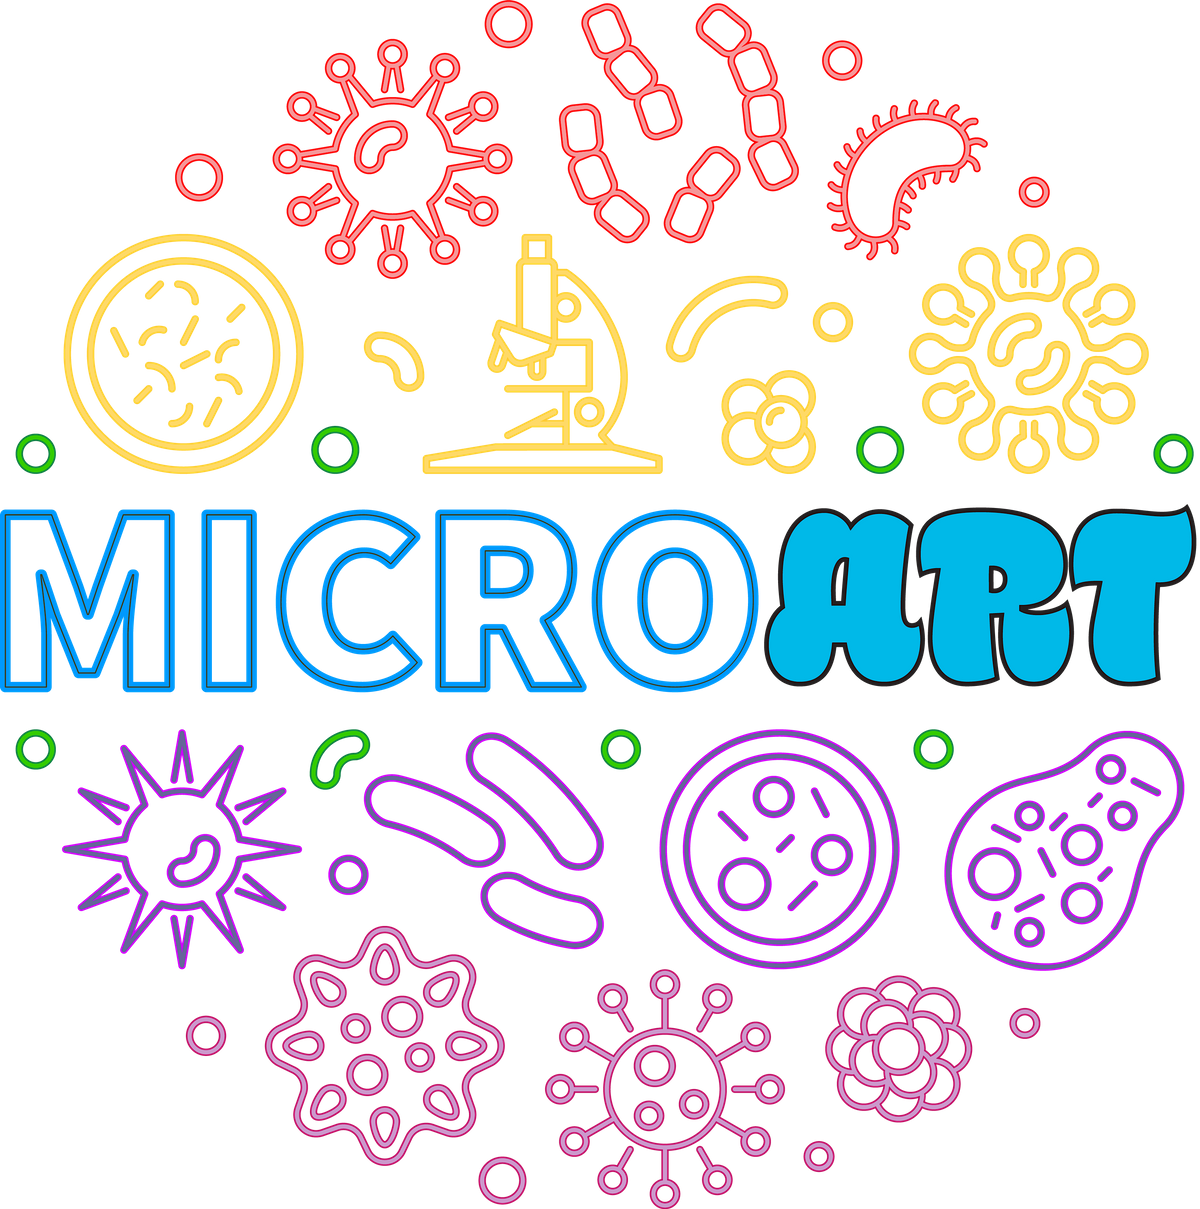 MicroArt on Display